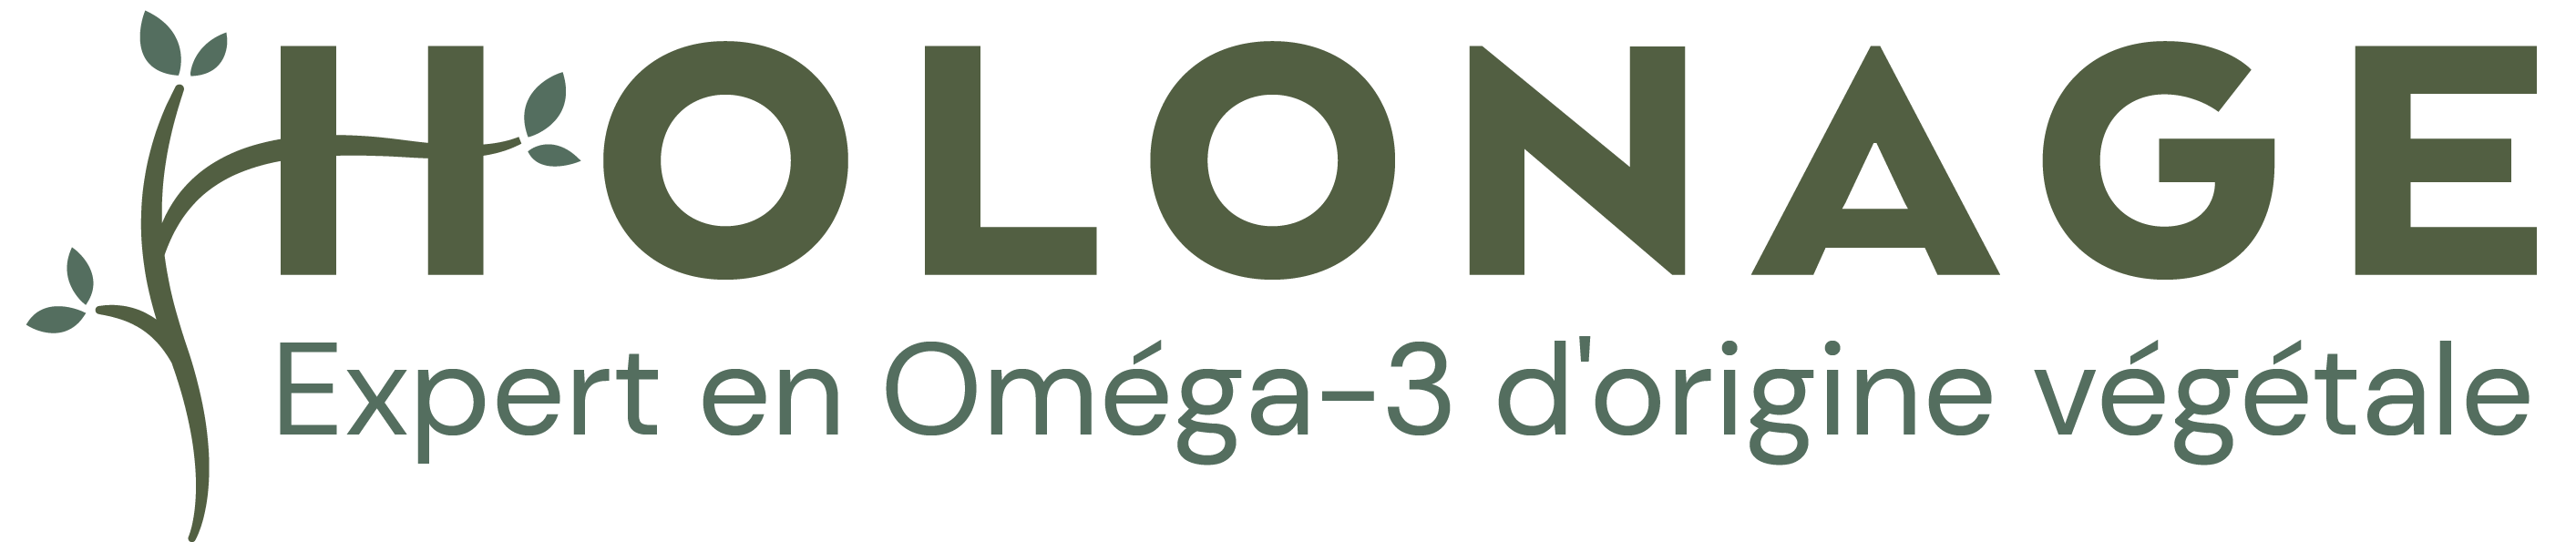 Logo Holonage